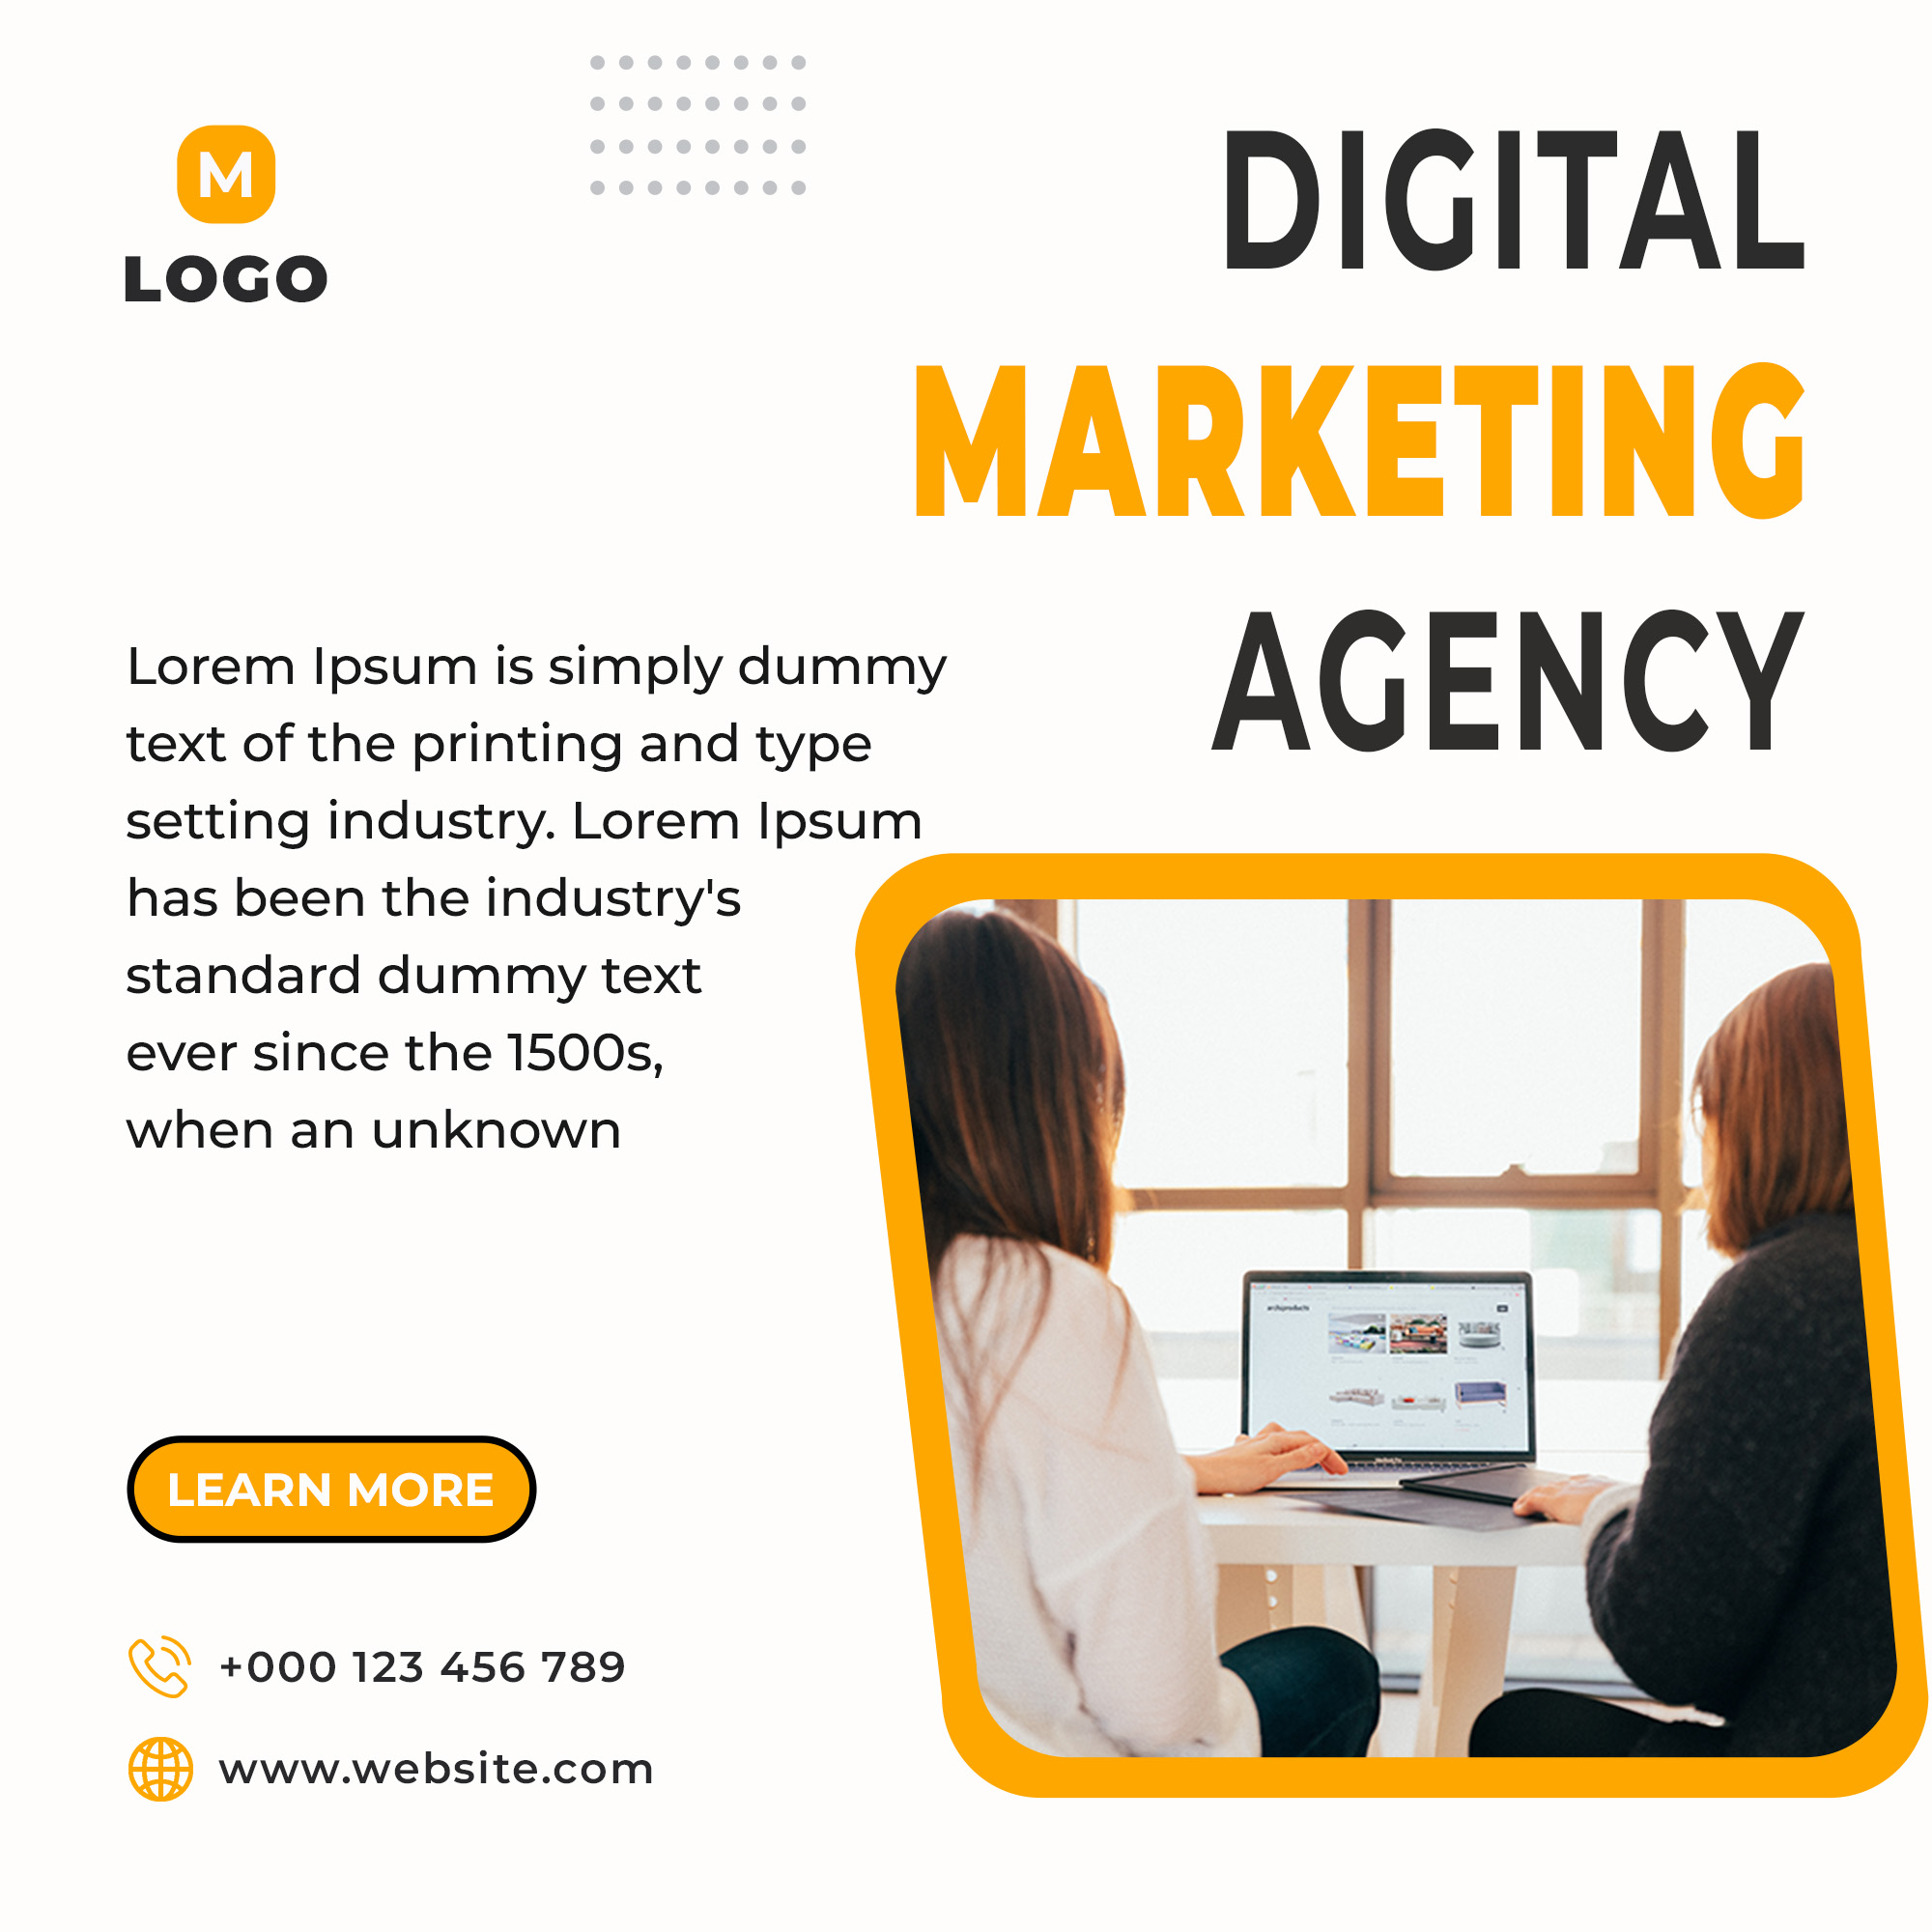 Flyer for a digital marketing agency.